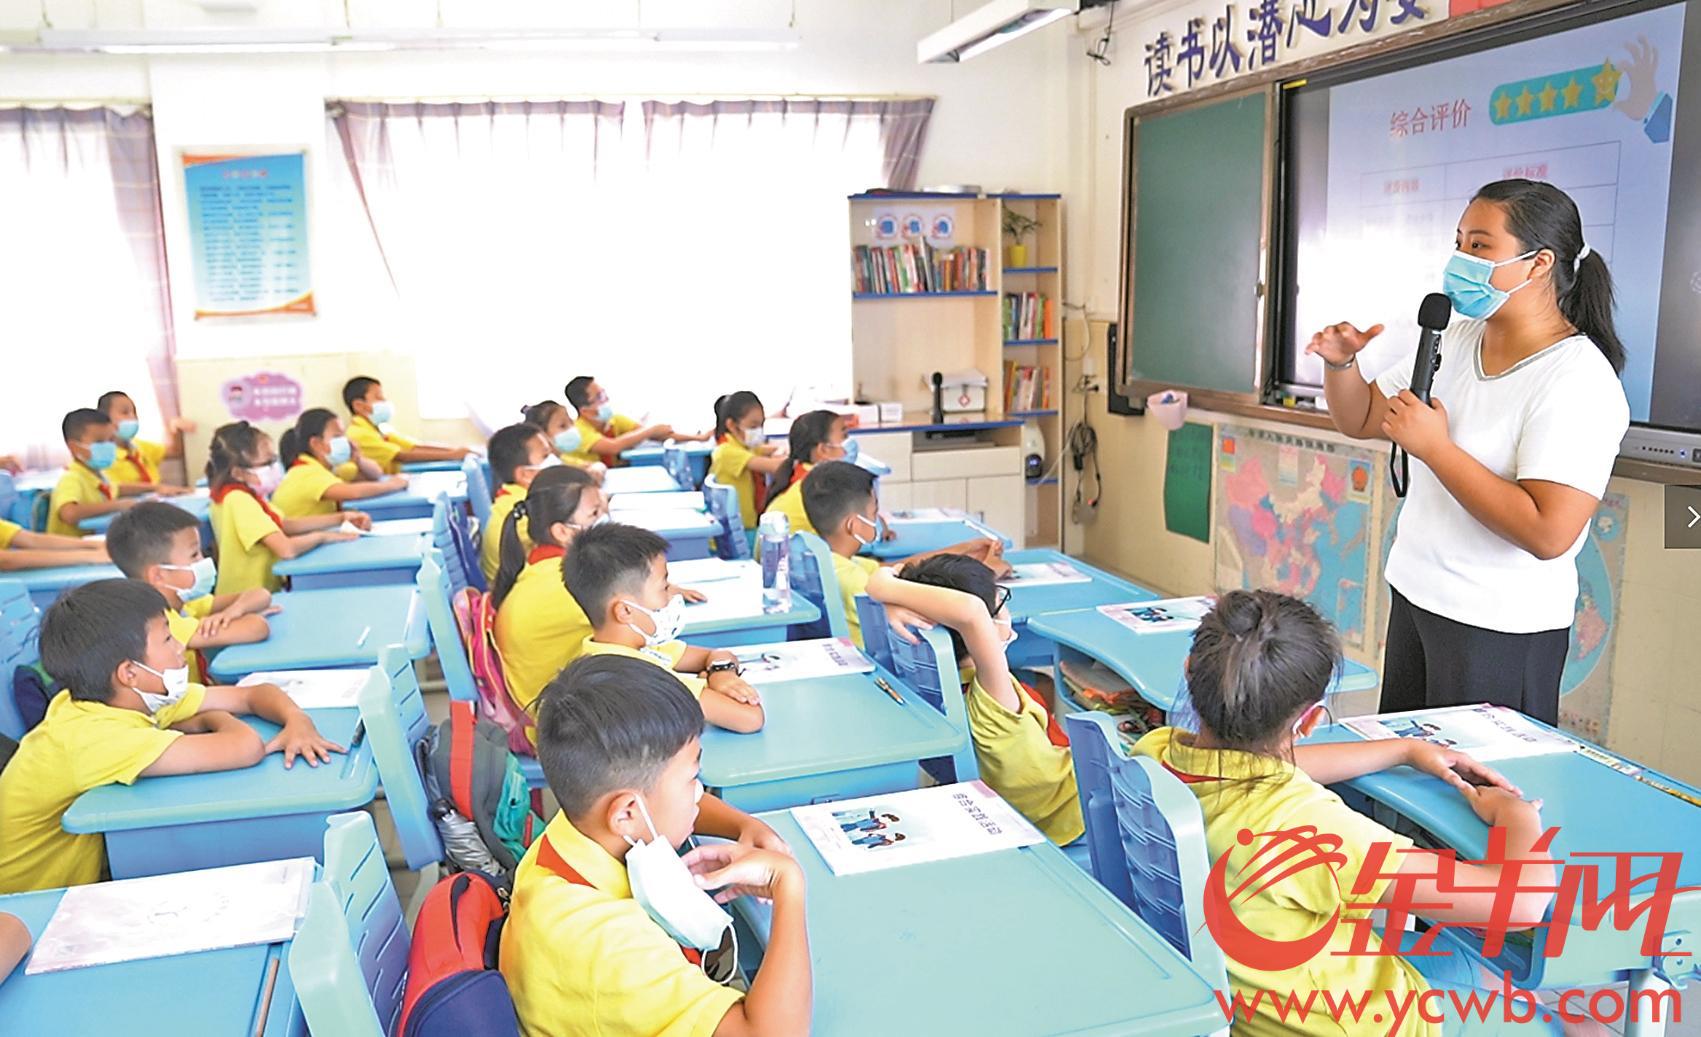 广州市天河区昌乐小学的老师岳婷婷正在给孩子们上课 羊城晚报全媒体